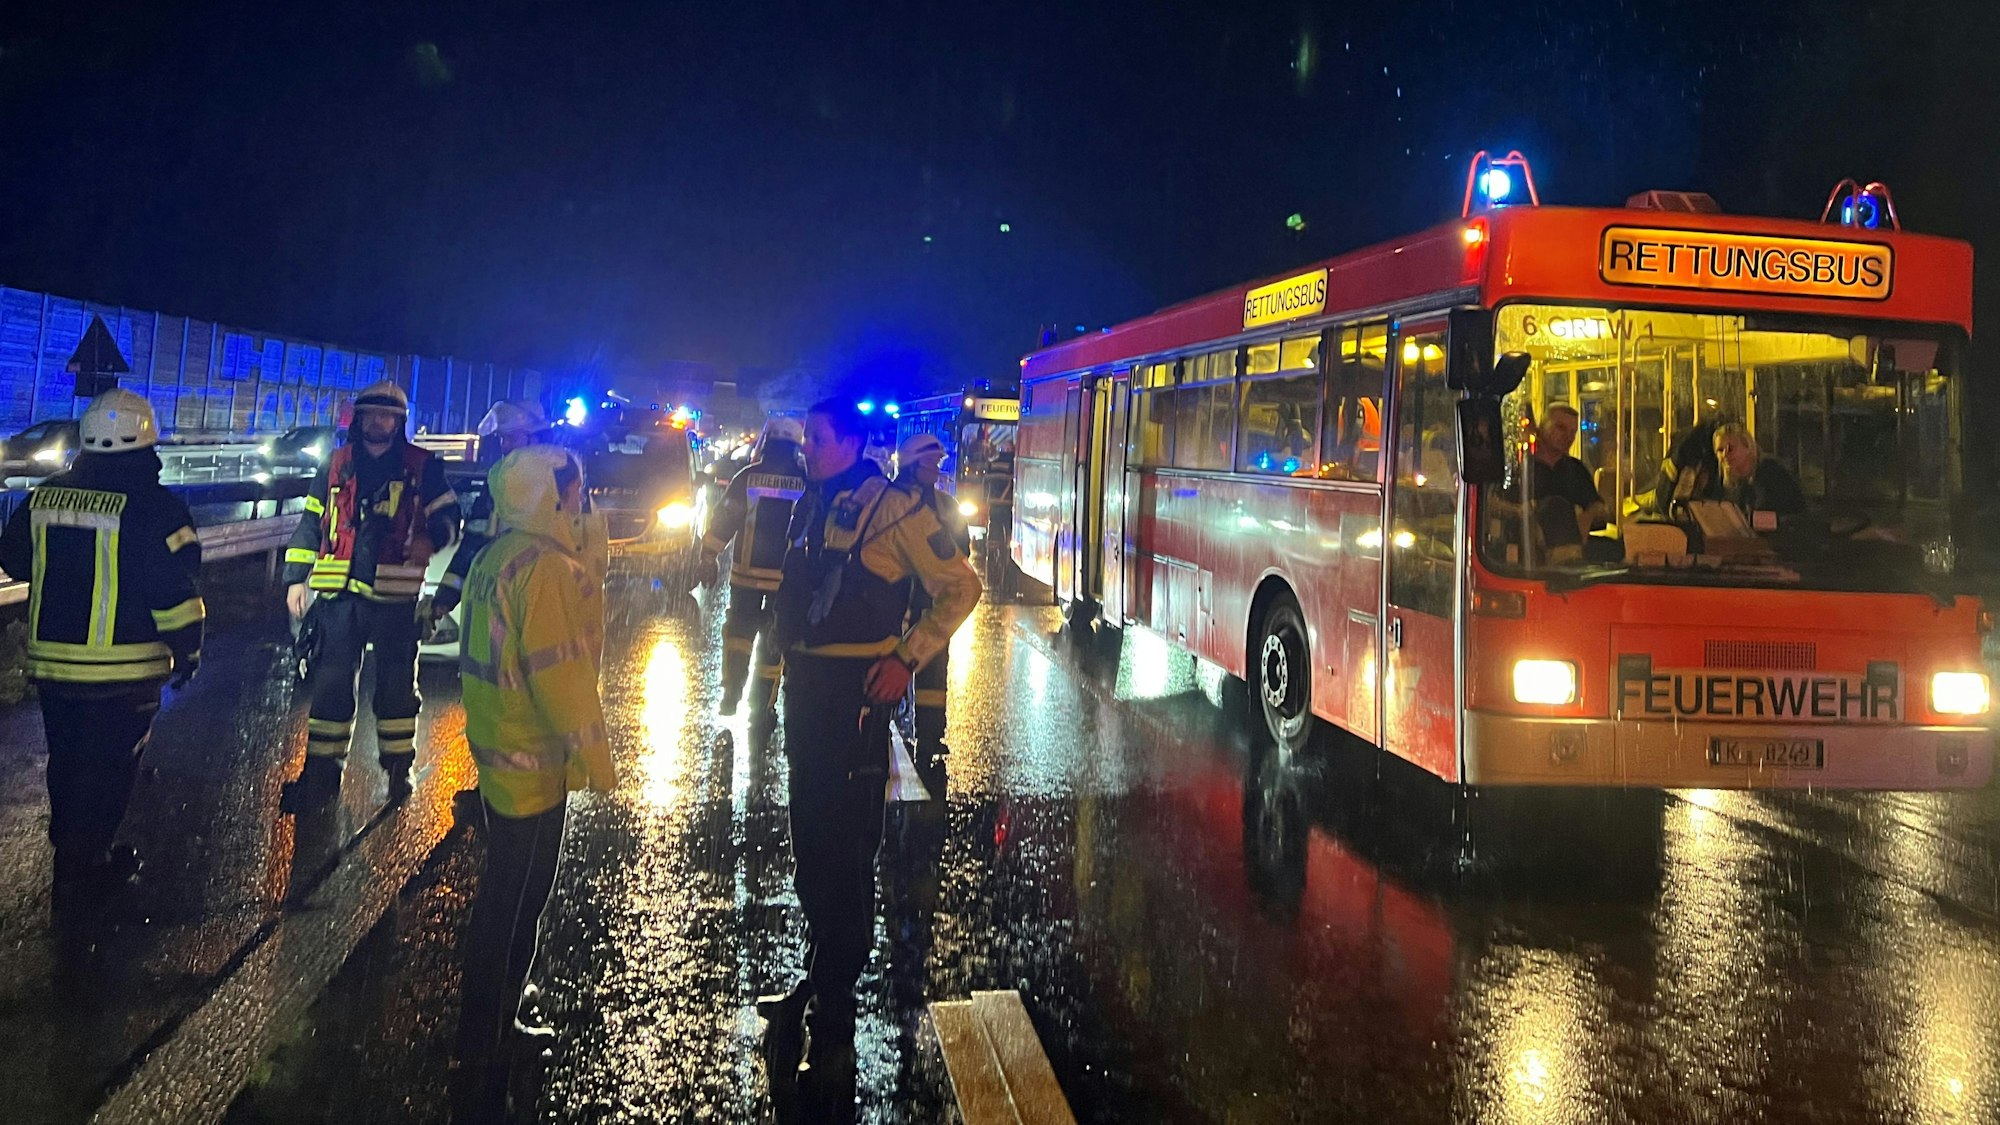 Das Bild zeigt einen Rettungsbus der Feuerwehr und mehrere Einsatzkräfte der Feuerwehr und Polizei bei strömenden Regen.